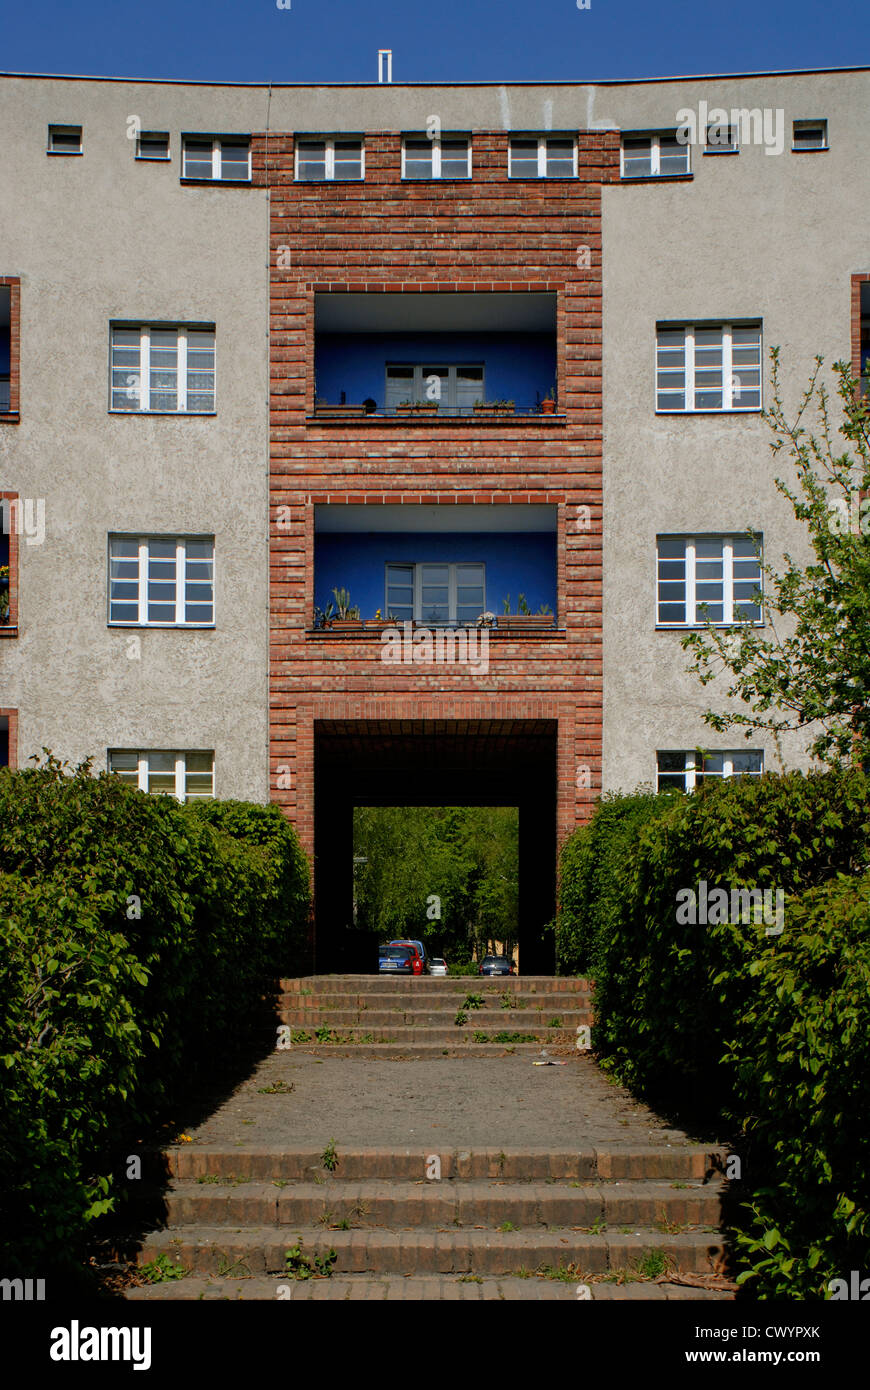 Hufeisensiedlung, Berlin-Britz, Neukoelln, Berlin, Germany, Europe Stock Photo